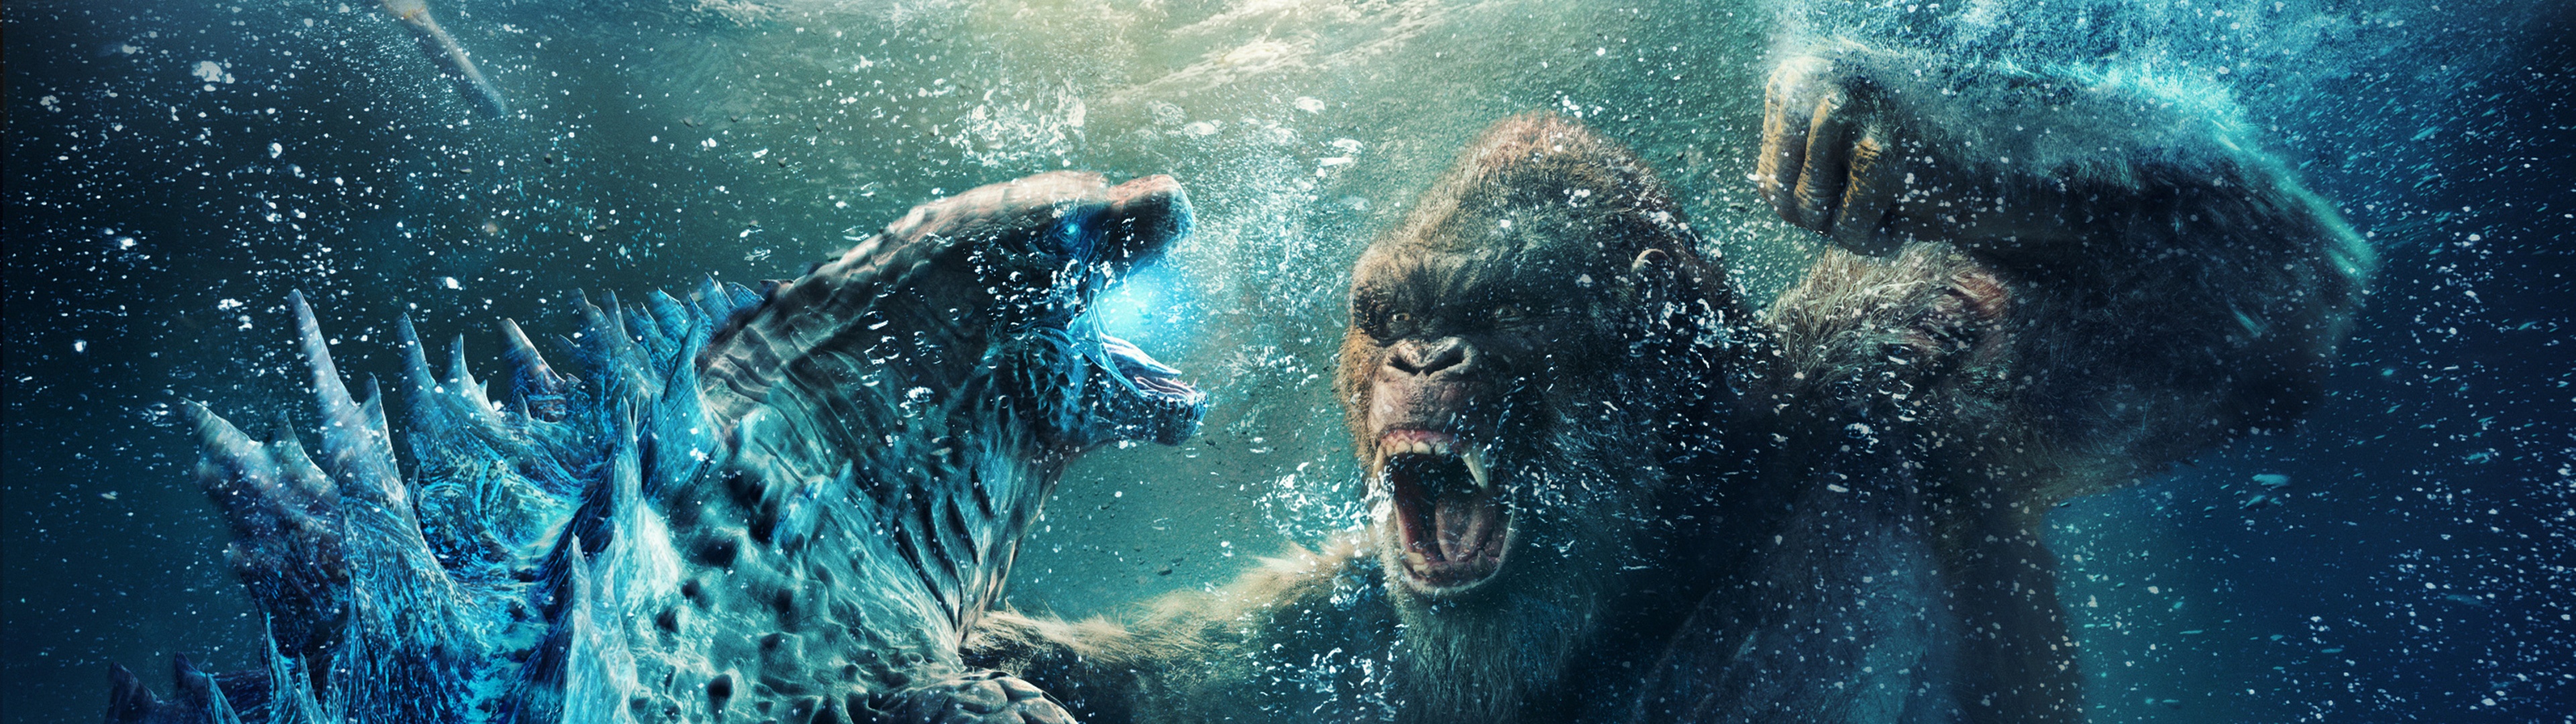 Godzilla vs Kong Wallpaper 4K, 2021 Movies, Movies, #4796